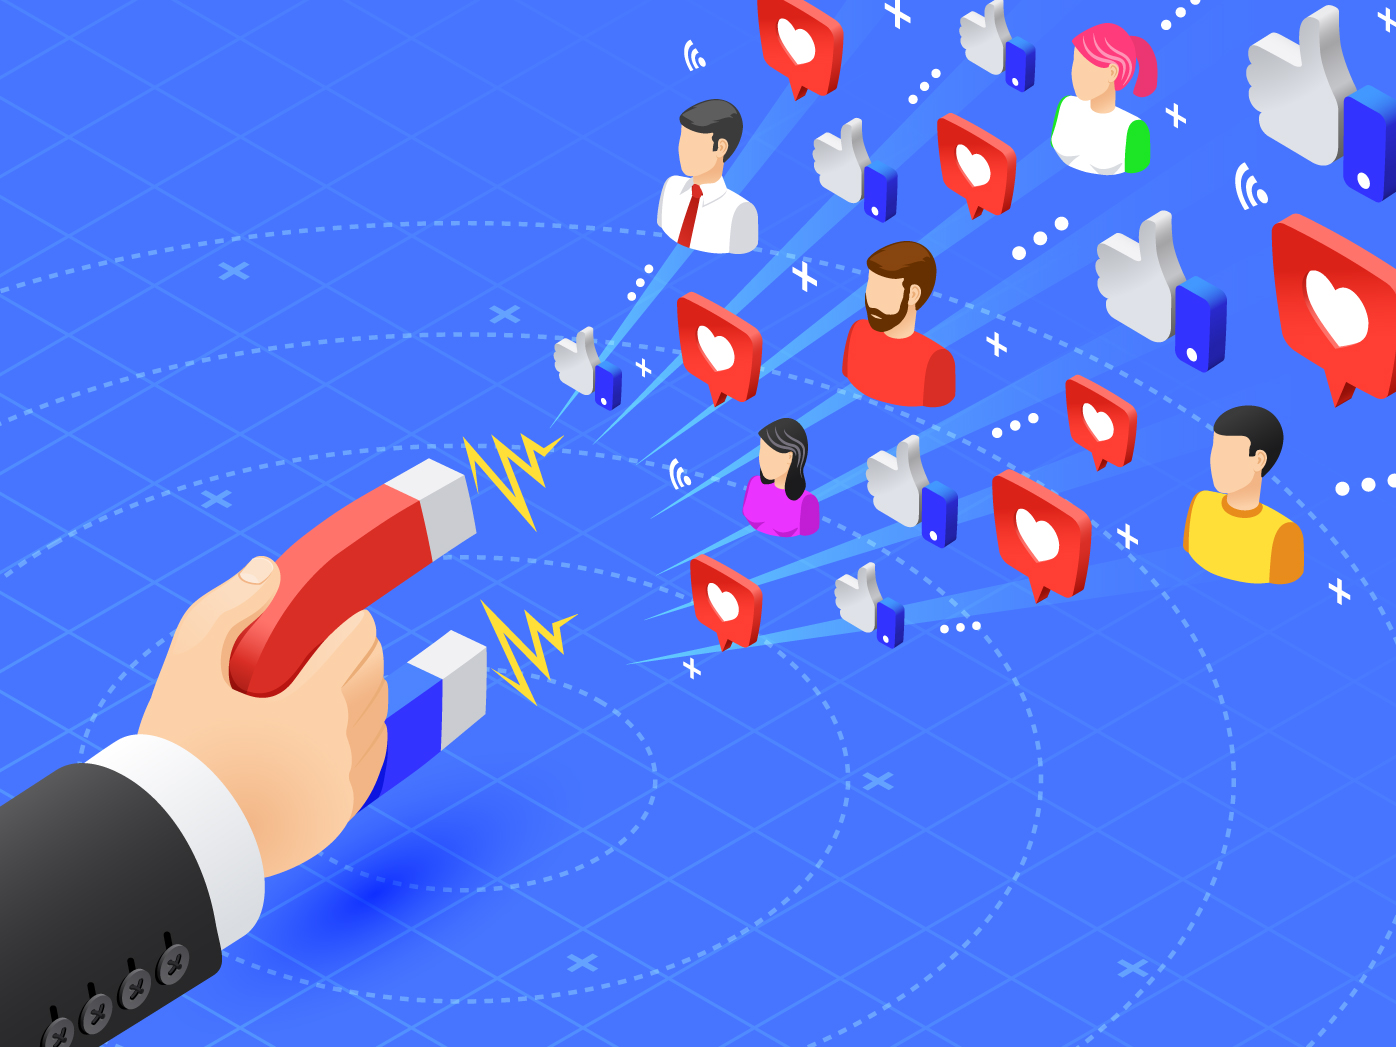 Social Media Marketing Partnerships